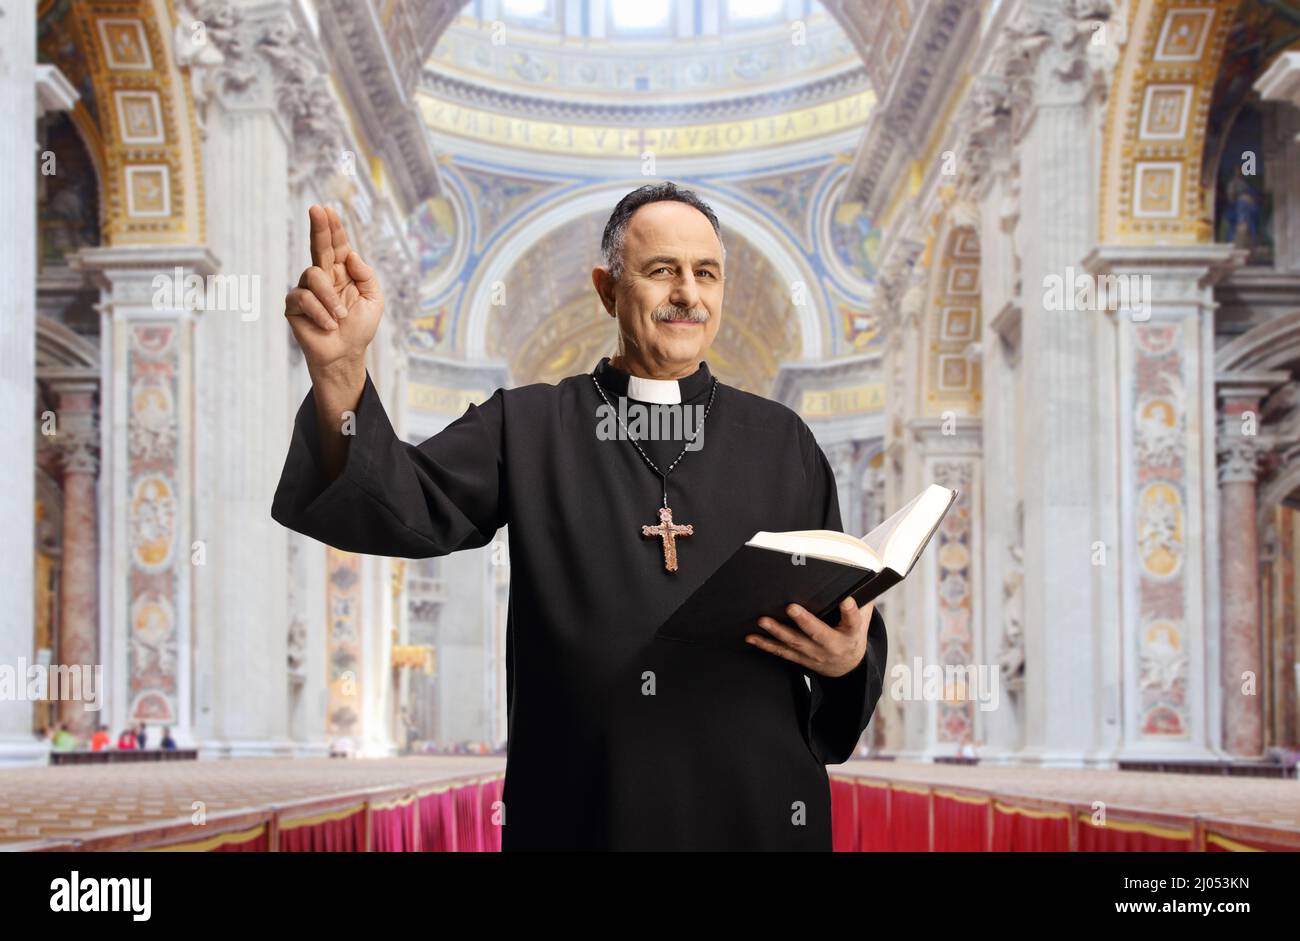 Reifer männlicher Priester, der eine bibel hält und mit der Hand in einer katholischen Kirche gestikuliert Stockfoto